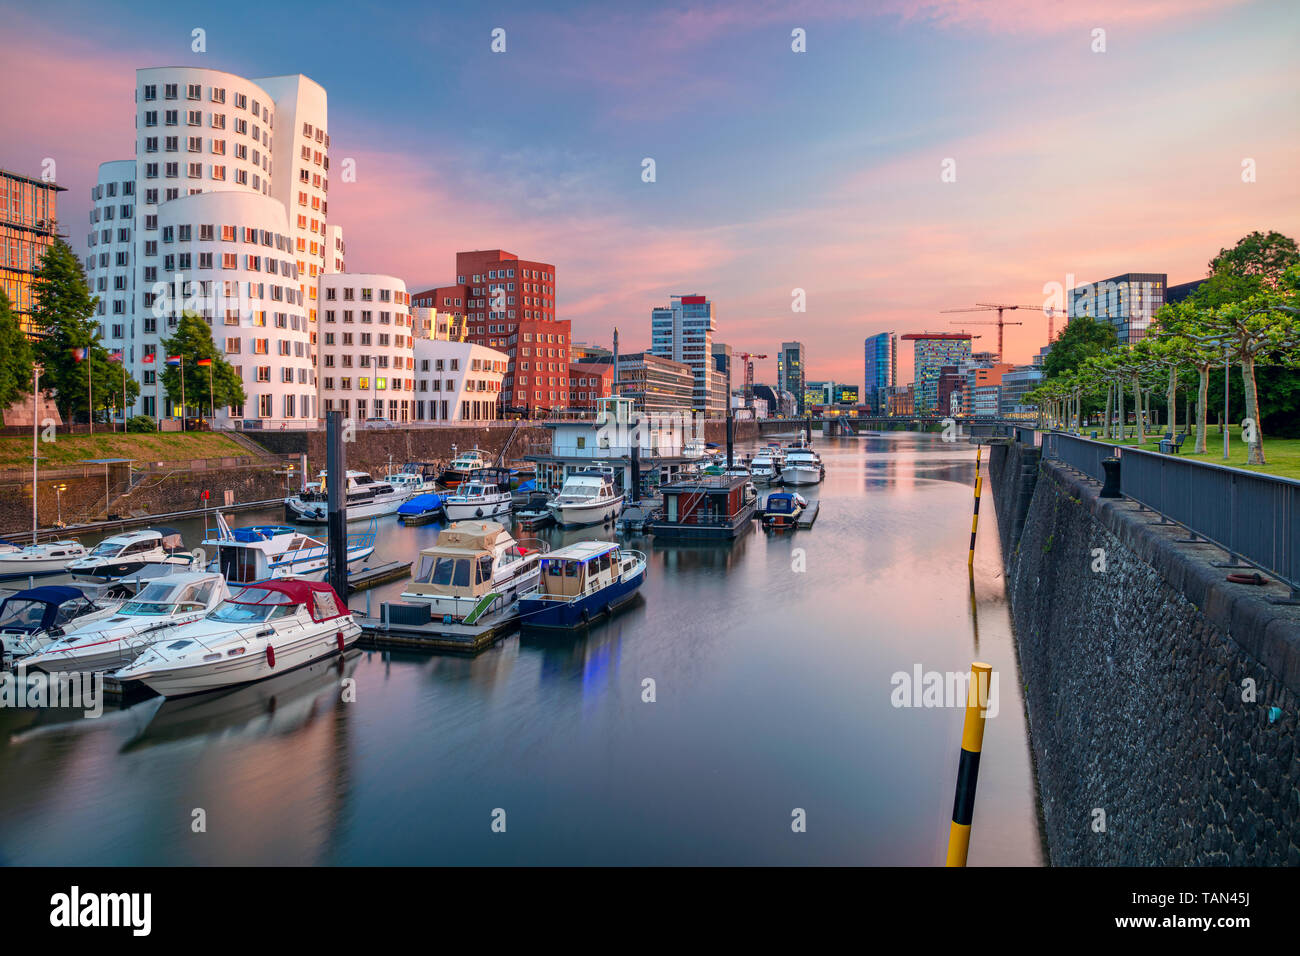 Düsseldorf, Alemania. Imagen de paisaje urbano de Düsseldorf, Alemania con el puerto de los medios de comunicación y el reflejo de la ciudad en el río Rin, durante la puesta de sol. Foto de stock